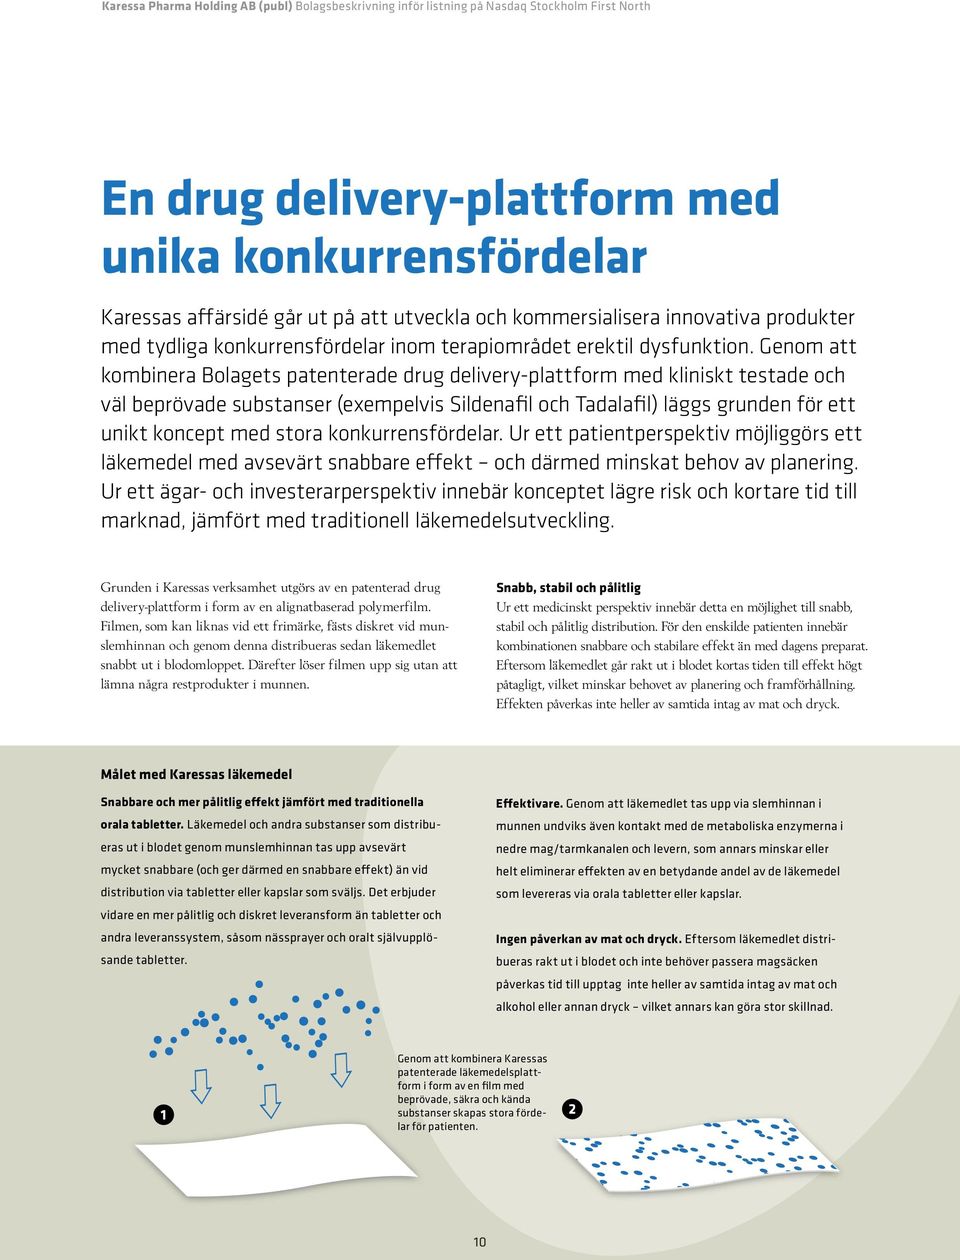 Genom att kombinera Bolagets patenterade drug delivery-plattform med kliniskt testade och väl beprövade substanser (exempelvis Sildenafil och Tadalafil) läggs grunden för ett unikt koncept med stora